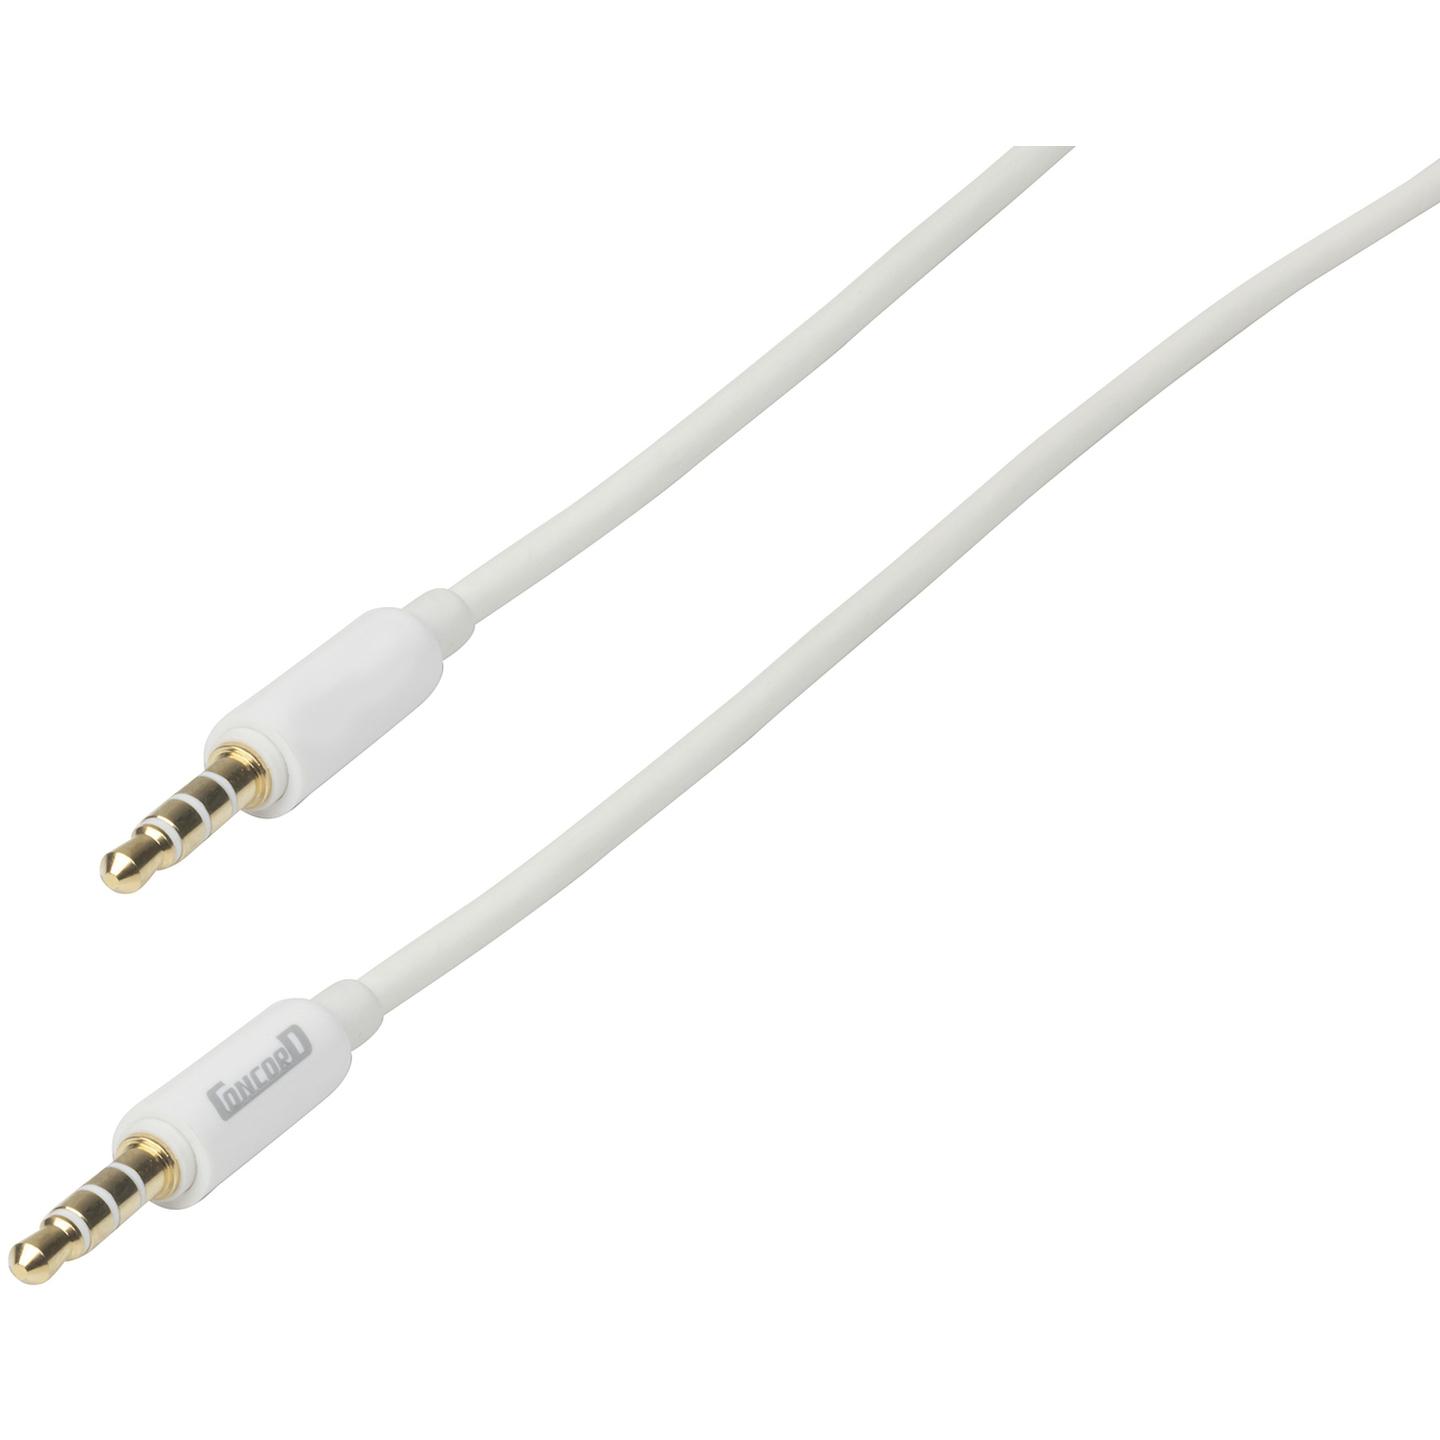 3.5mm 4 Pole Plug to 3.5mm 4 Pole Plug AV Cable - 2m